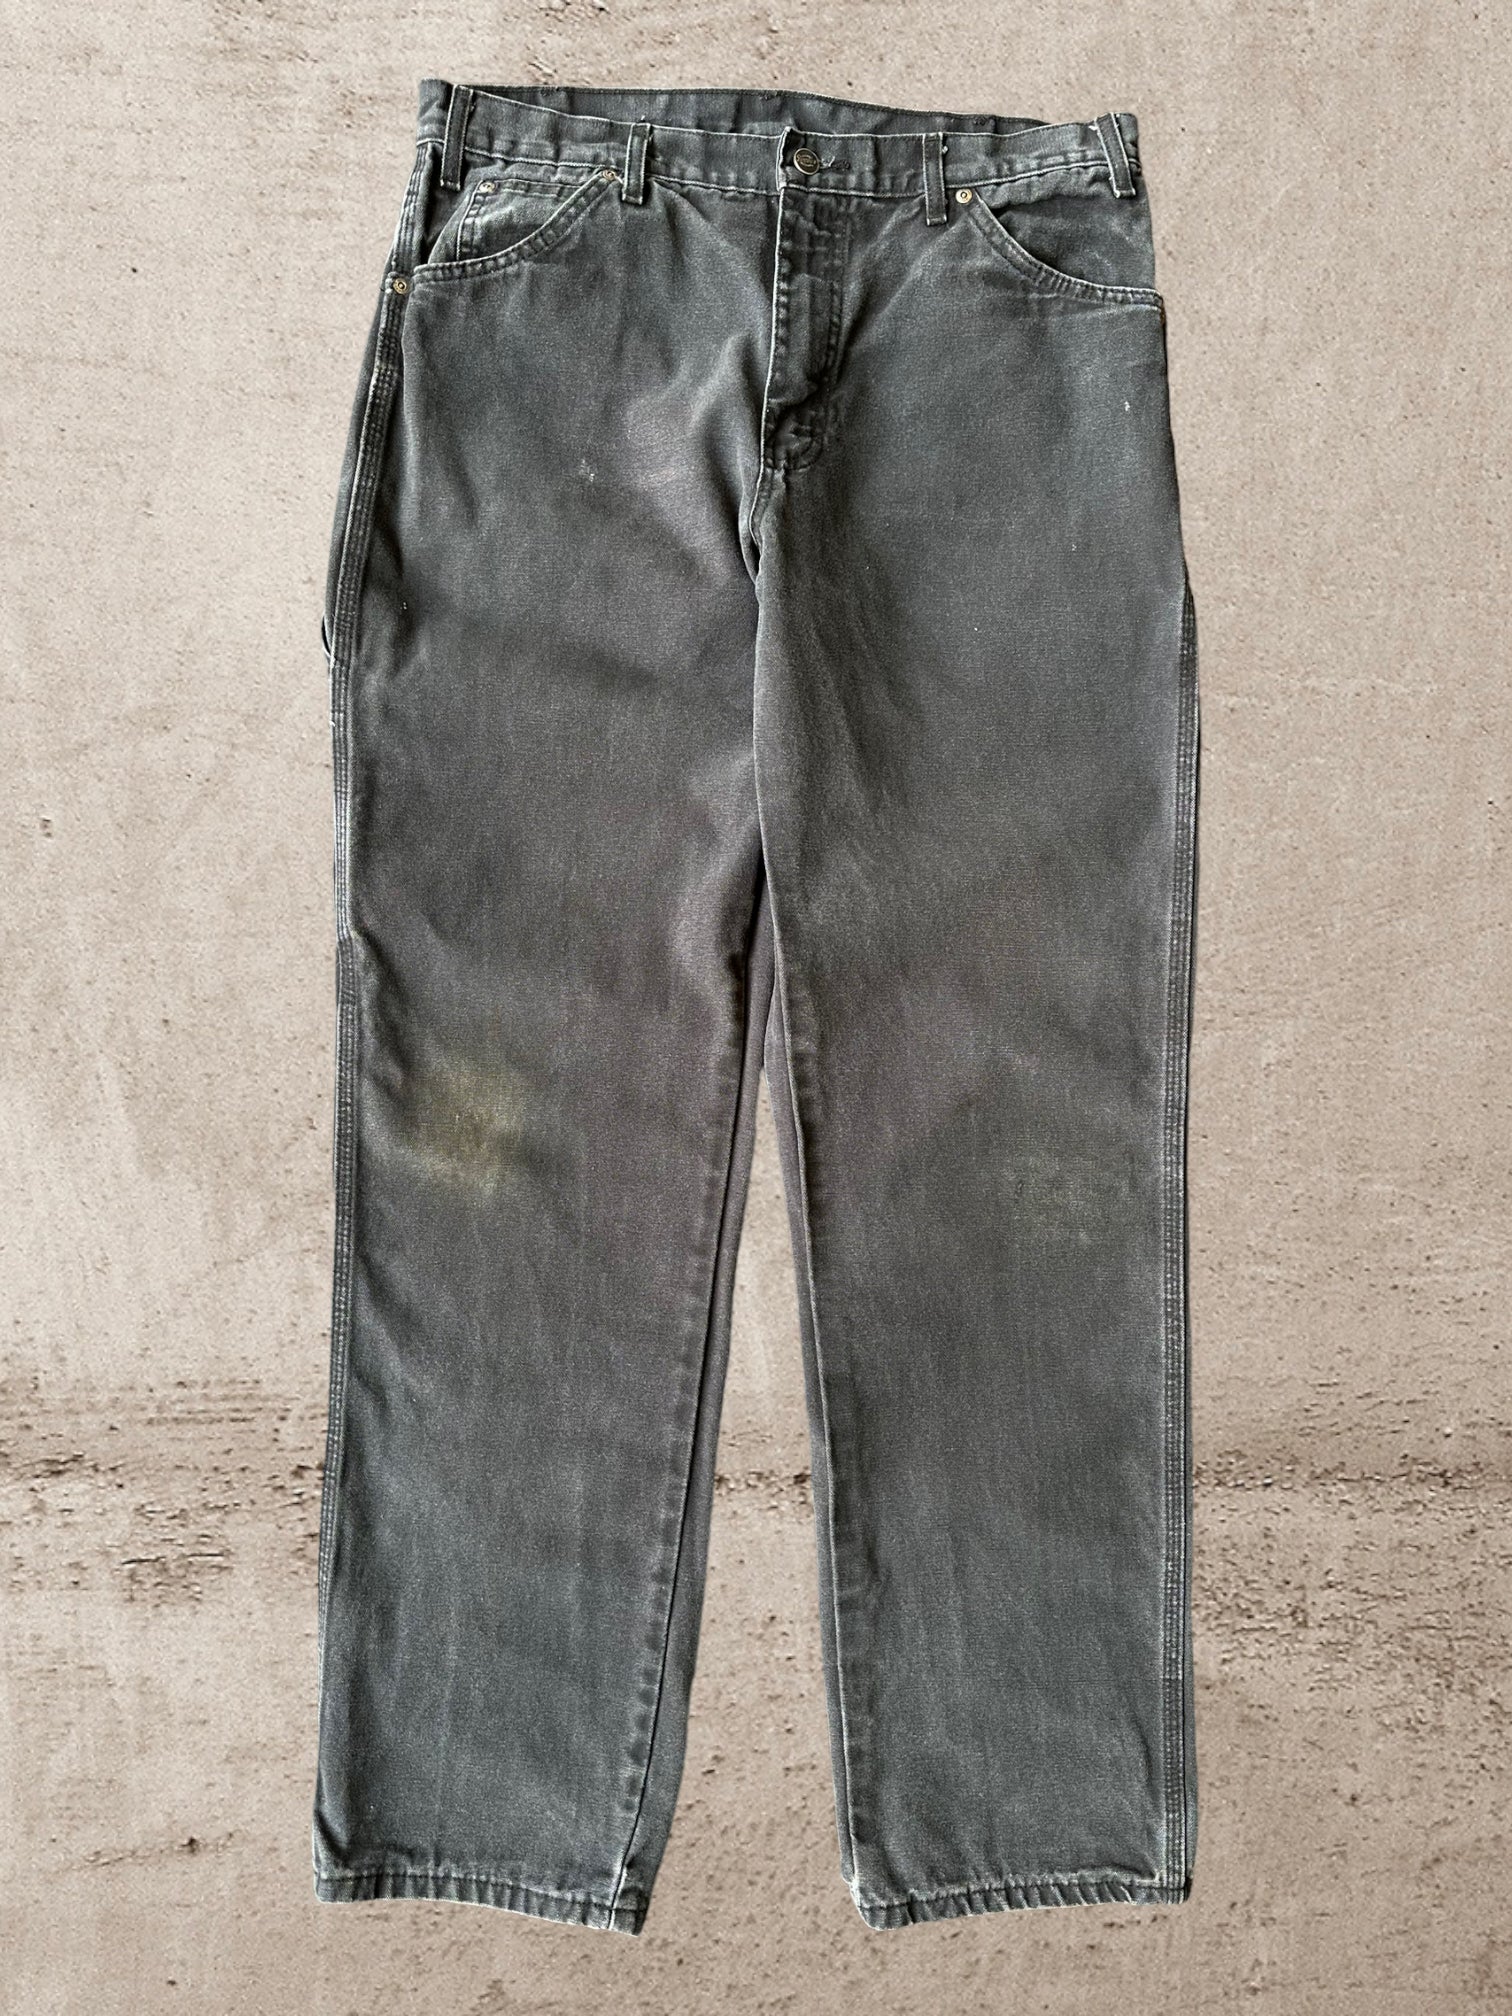 Vintage Dickies Carpenter Pants - 35x33